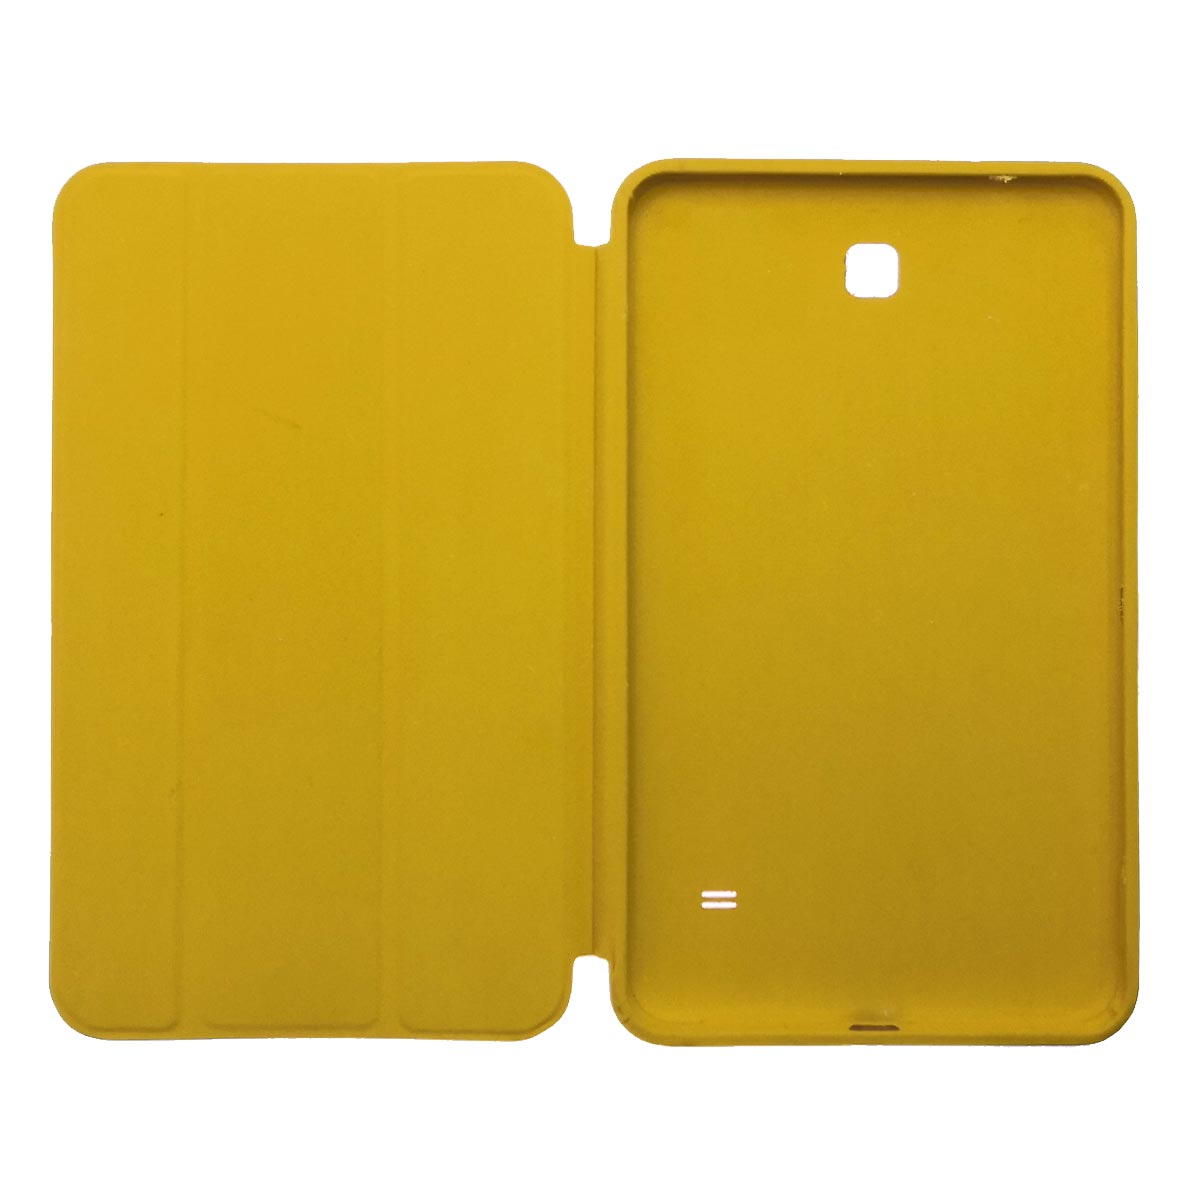 Чехол Smart Case для планшета SAMSUNG Galaxy Tab 4 8.0 (SM-T330), экокожа, цвет золотистый